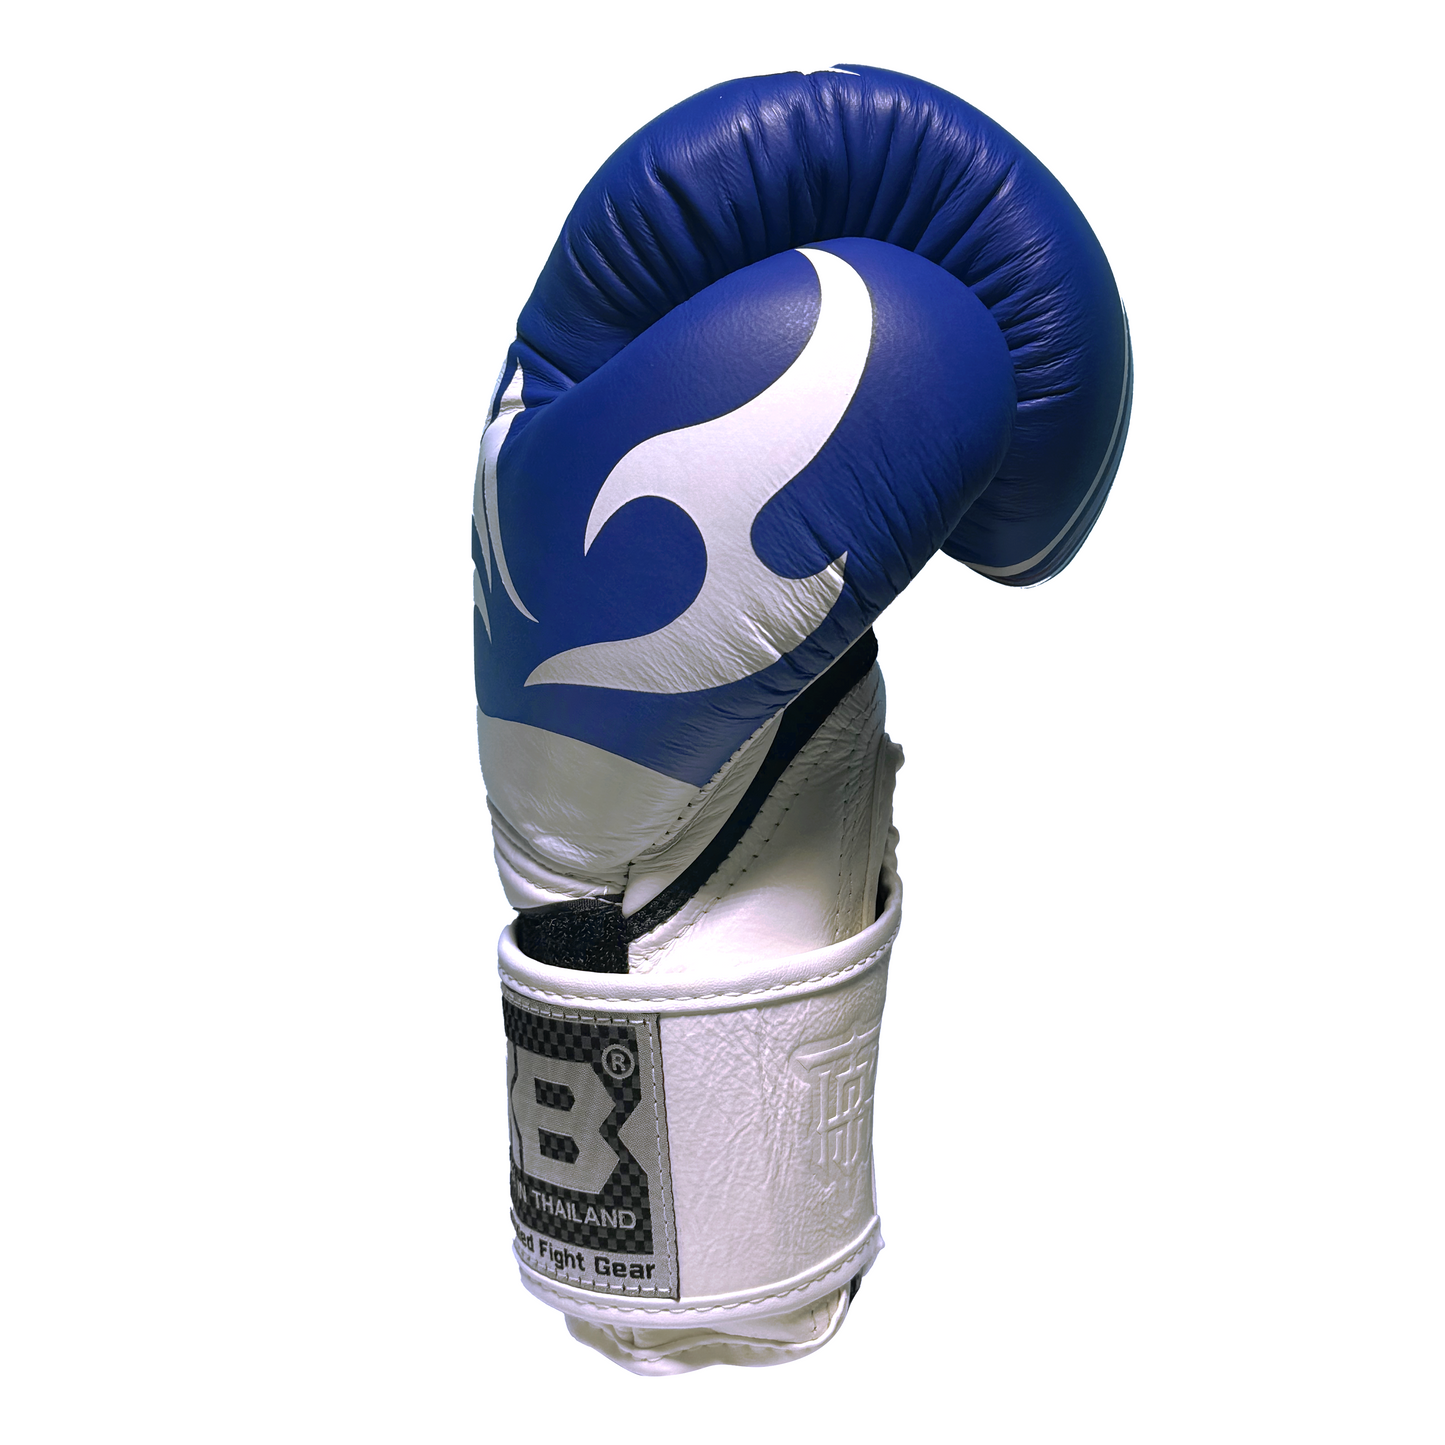 Top King Boxhandschuhe "World Serie" weiss/blau